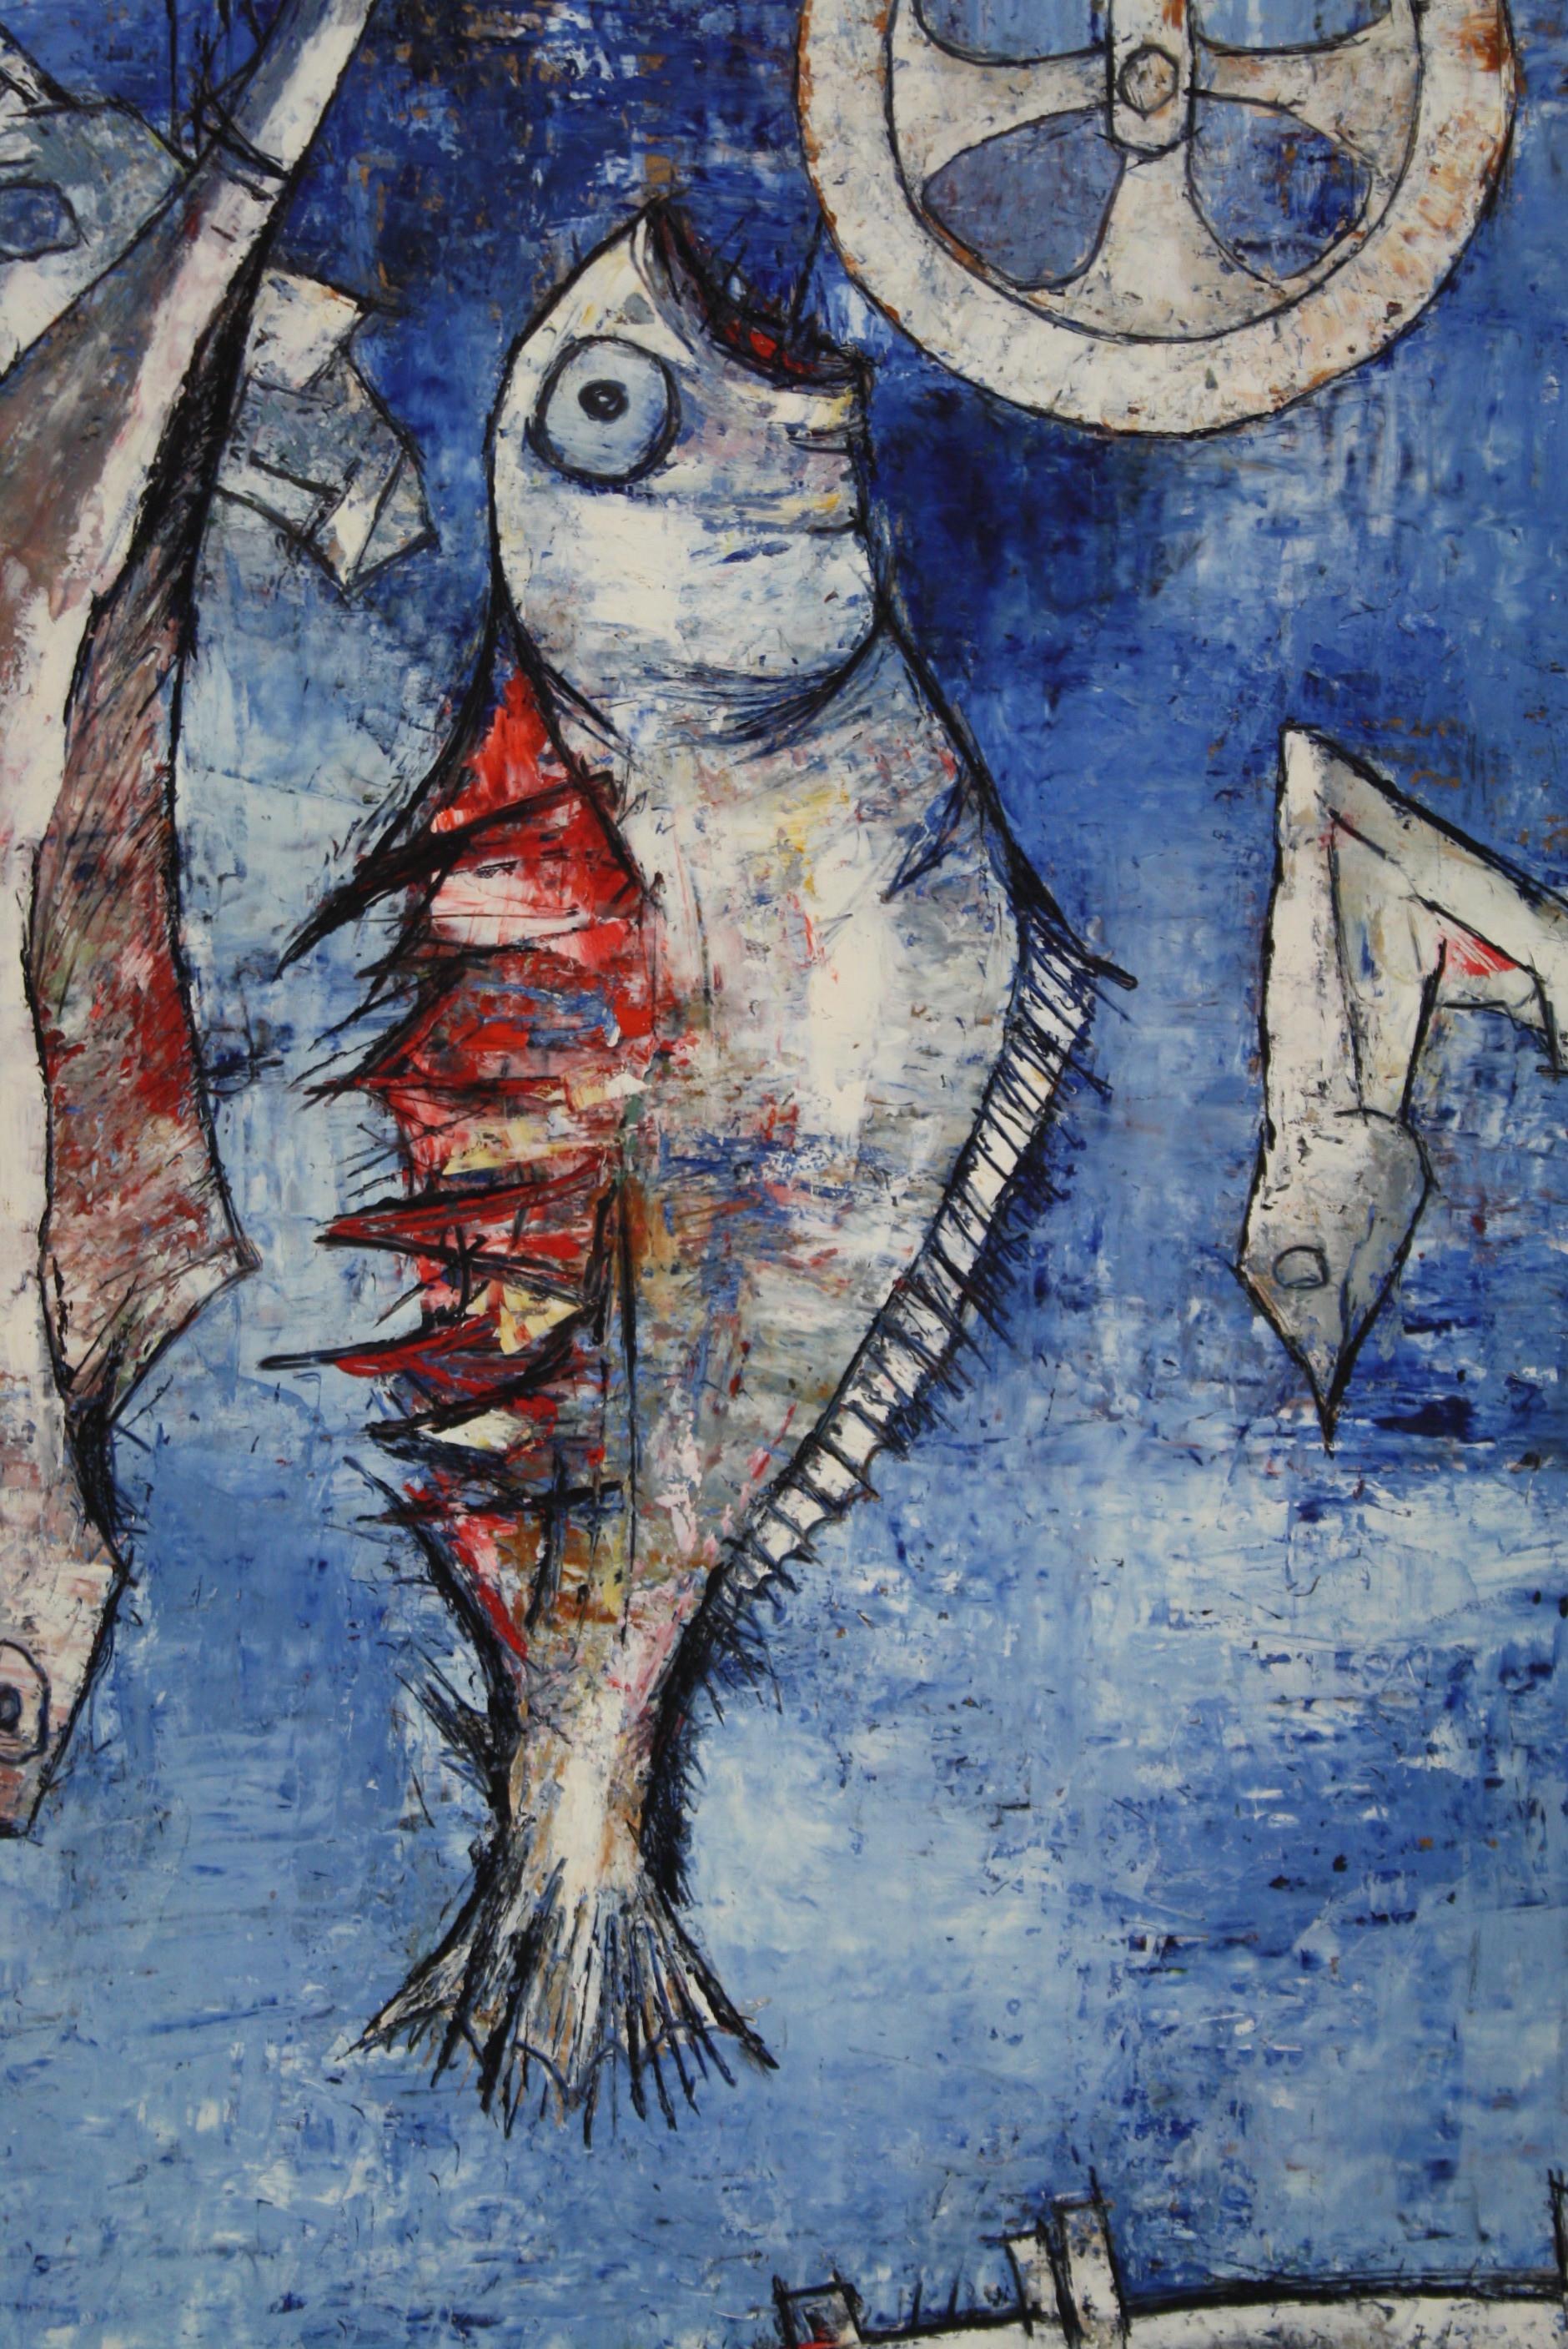 Jean Sanglar wurde 1926 in Frankreich geboren. Er zeichnet von klein auf mit Geschmack und Talent, doch seine Familie betrachtet dies nur als ein Hobby. Nach seinem Jurastudium trat er später eine Stelle im Marineministerium in Paris an, wo er seine